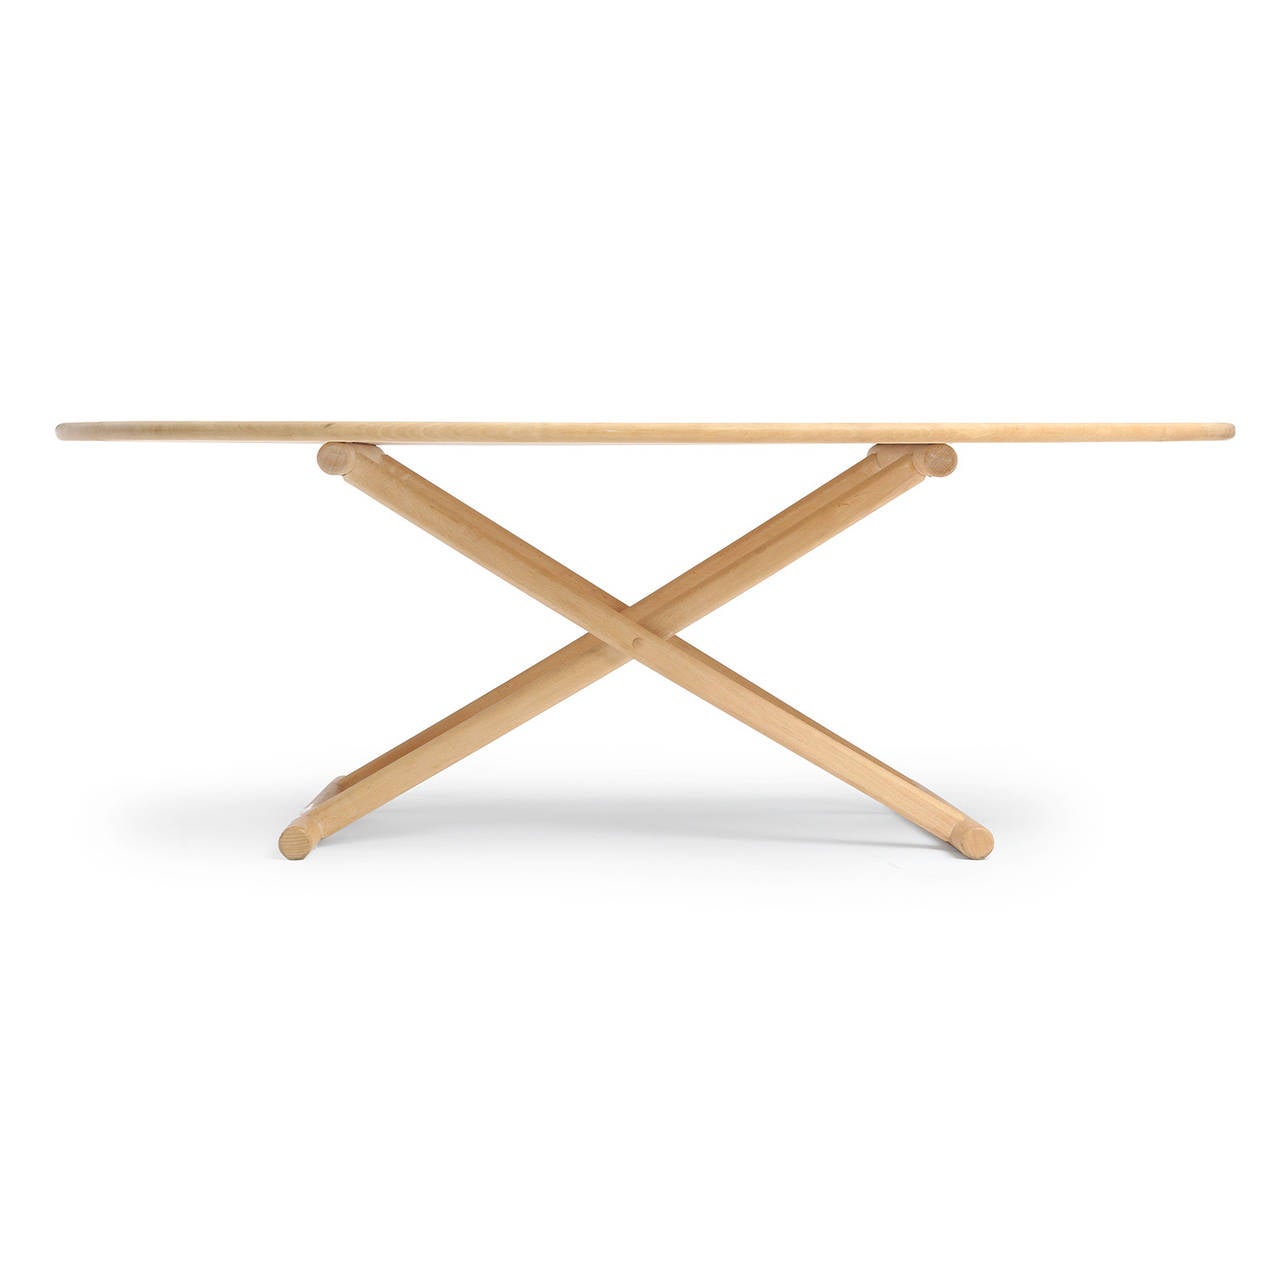 Niedriger Tisch oder Couchtisch aus Weißbuche mit einer freiliegenden X-Struktur mit Kufenbeinen, die eine ovale Platte tragen.